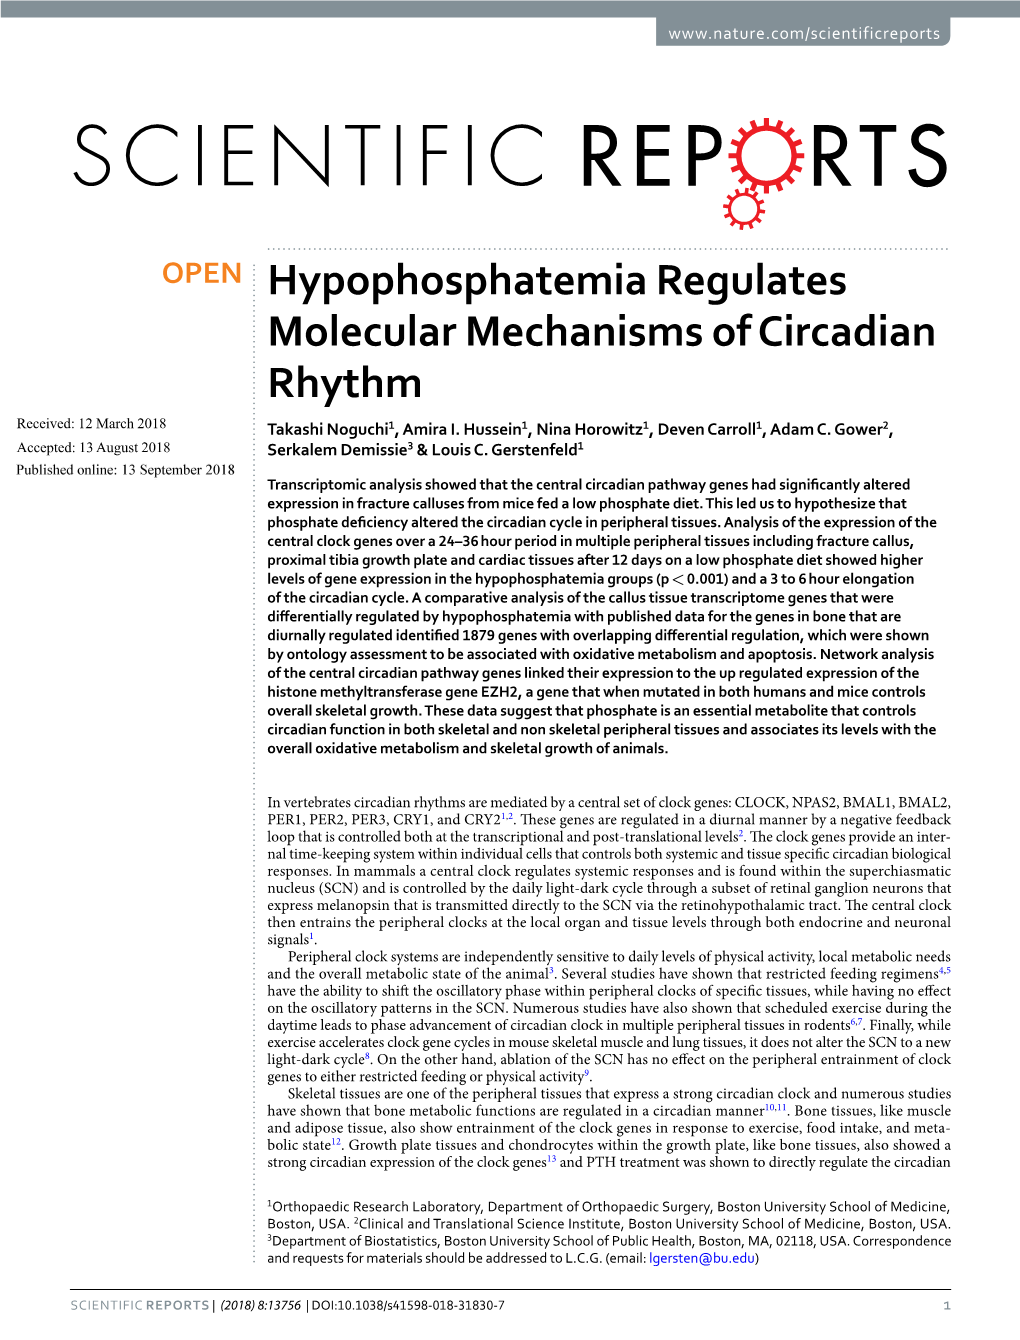 Hypophosphatemia Regulates Molecular Mechanisms of Circadian Rhythm Received: 12 March 2018 Takashi Noguchi1, Amira I